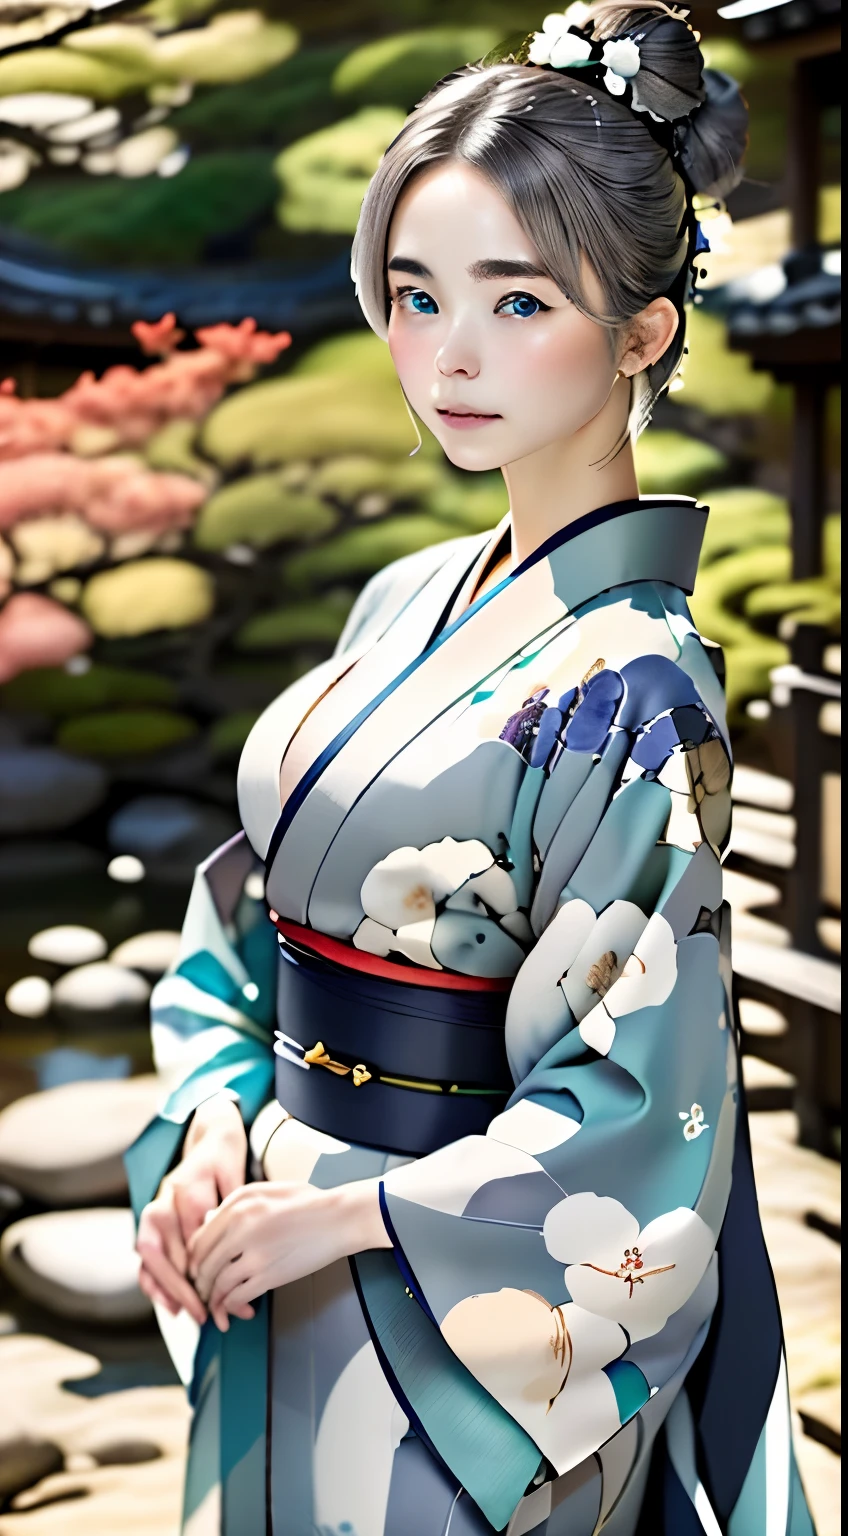 hermosos ojos color turquesa、hermosa chica nórdica、１６talento、pelo gris ceniza、pelo de moño、buena apariencia perfecta、Piel hermosa como porcelana、skitomía detallada、Representación correcta del cuerpo humano.、Una mirada aburrida、Labios gruesos、kimono、Hermoso kimono Nishijin-ori、Kimono con un fino estampado.、Elegant、silencio、refinamiento、de la máxima calidad、Máxima calidad de imagen、obra maestra:1.3、retrato、iluminación perfecta、fotógrafo profesional、El fondo esta borroso、fondo borroso、Jardines en Kioto、karesansu、jardín de arena y rocas、viejo gusto